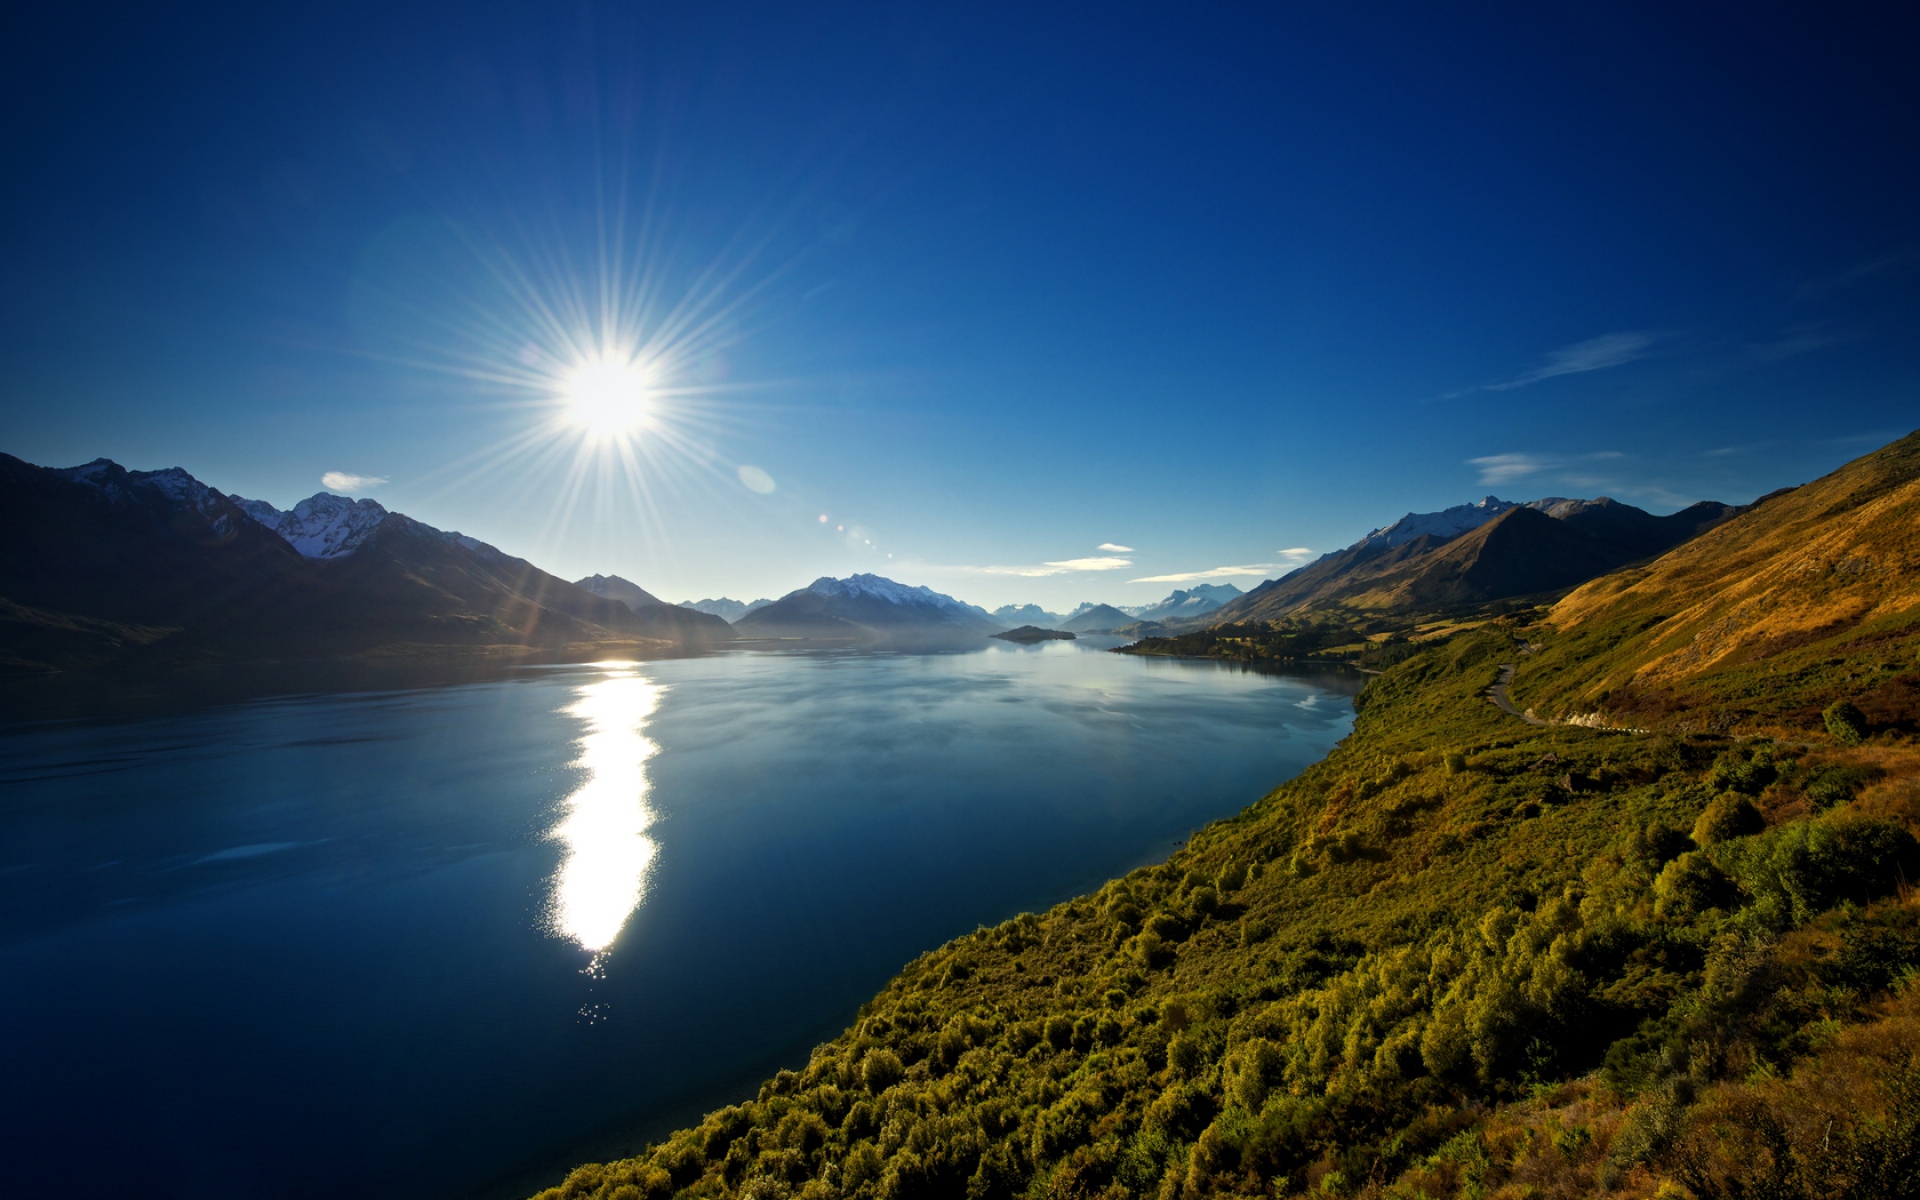 Картинки Солнце, свет, день, озеро, новая зеландия фото и обои на рабочий стол